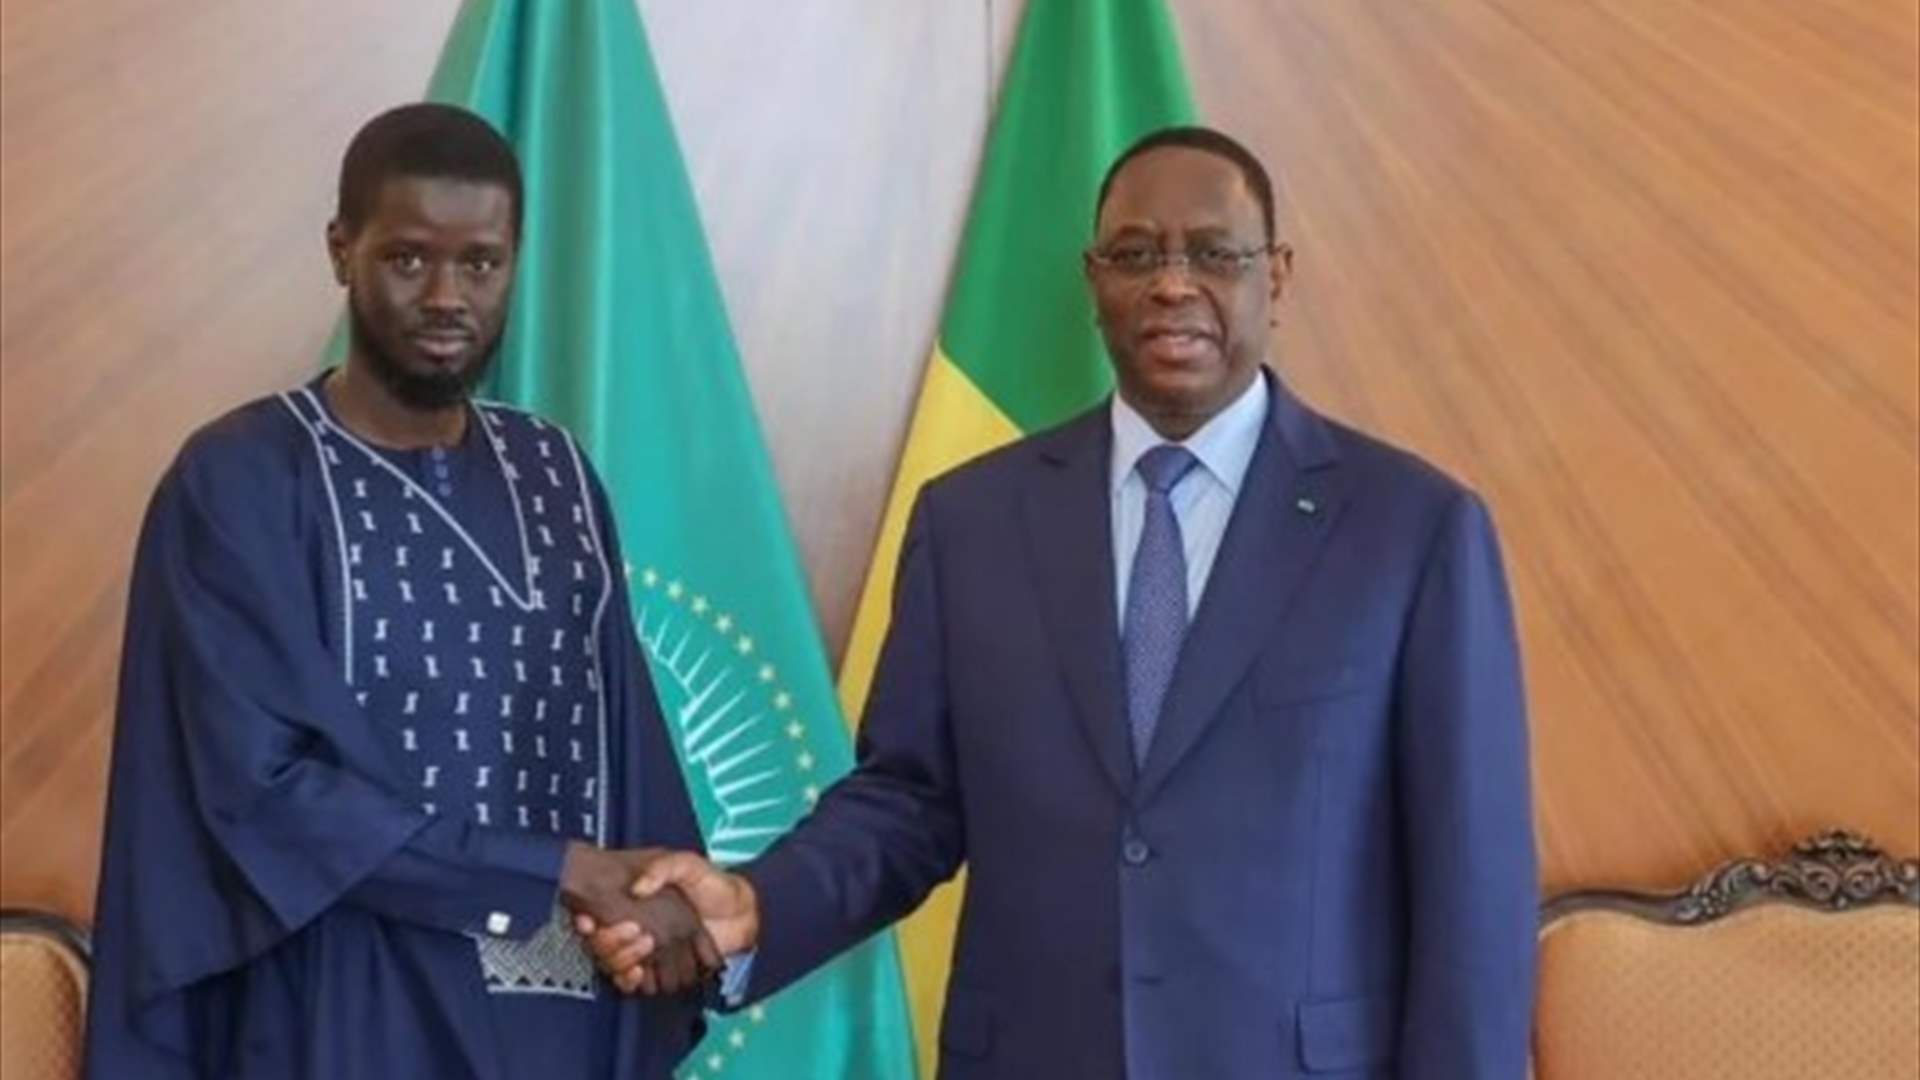 ماكي سال يستقبل الرئيس السنغالي المنتخب